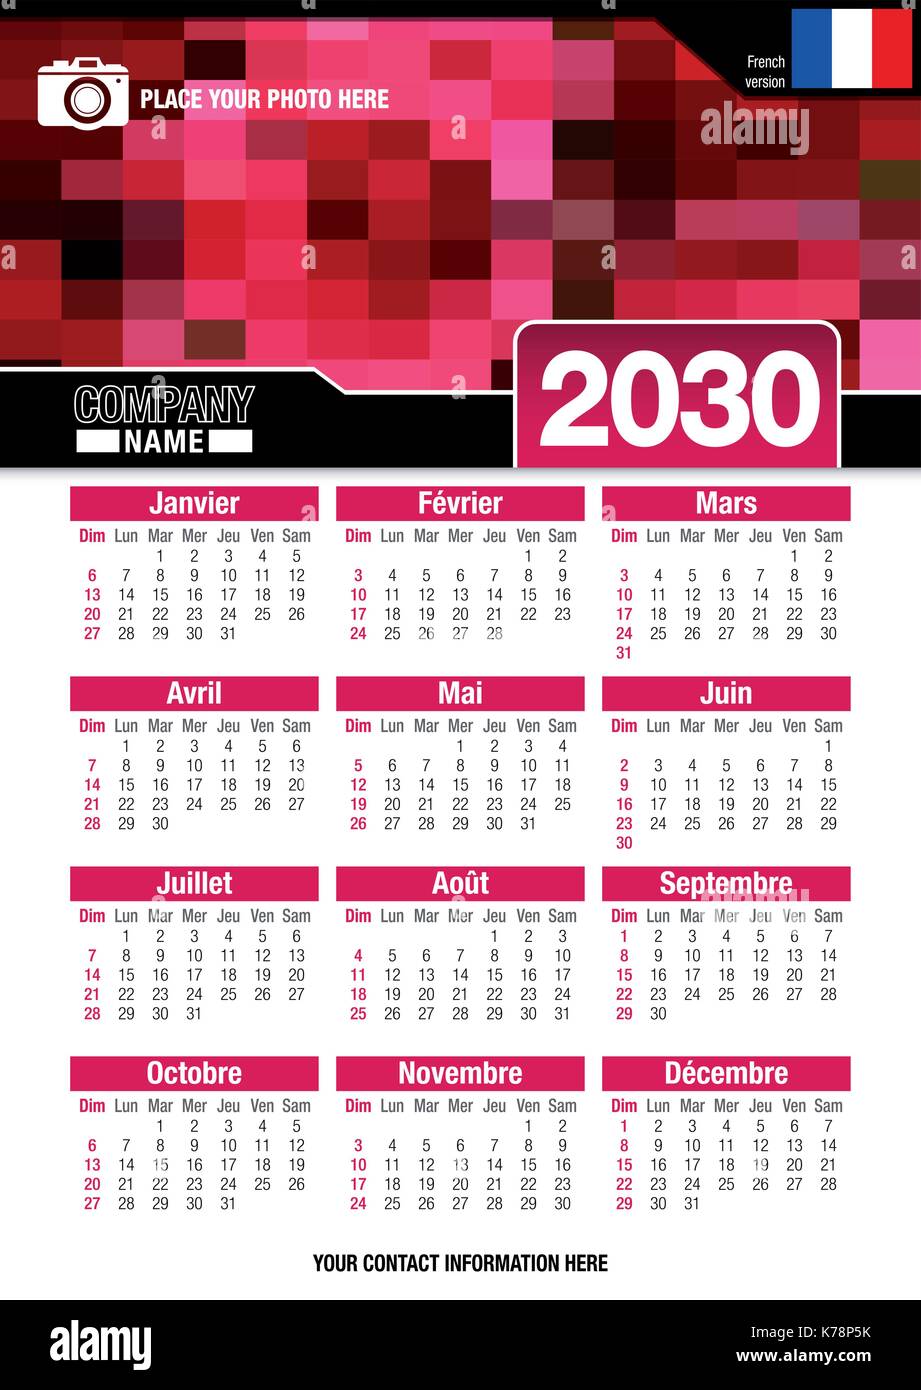 Utile calendario da parete 2030 con design di colori rosso mosaico. Formato A4 verticale. Dimensioni: 210mm x 297mm. Versione francese - immagine vettoriale Illustrazione Vettoriale